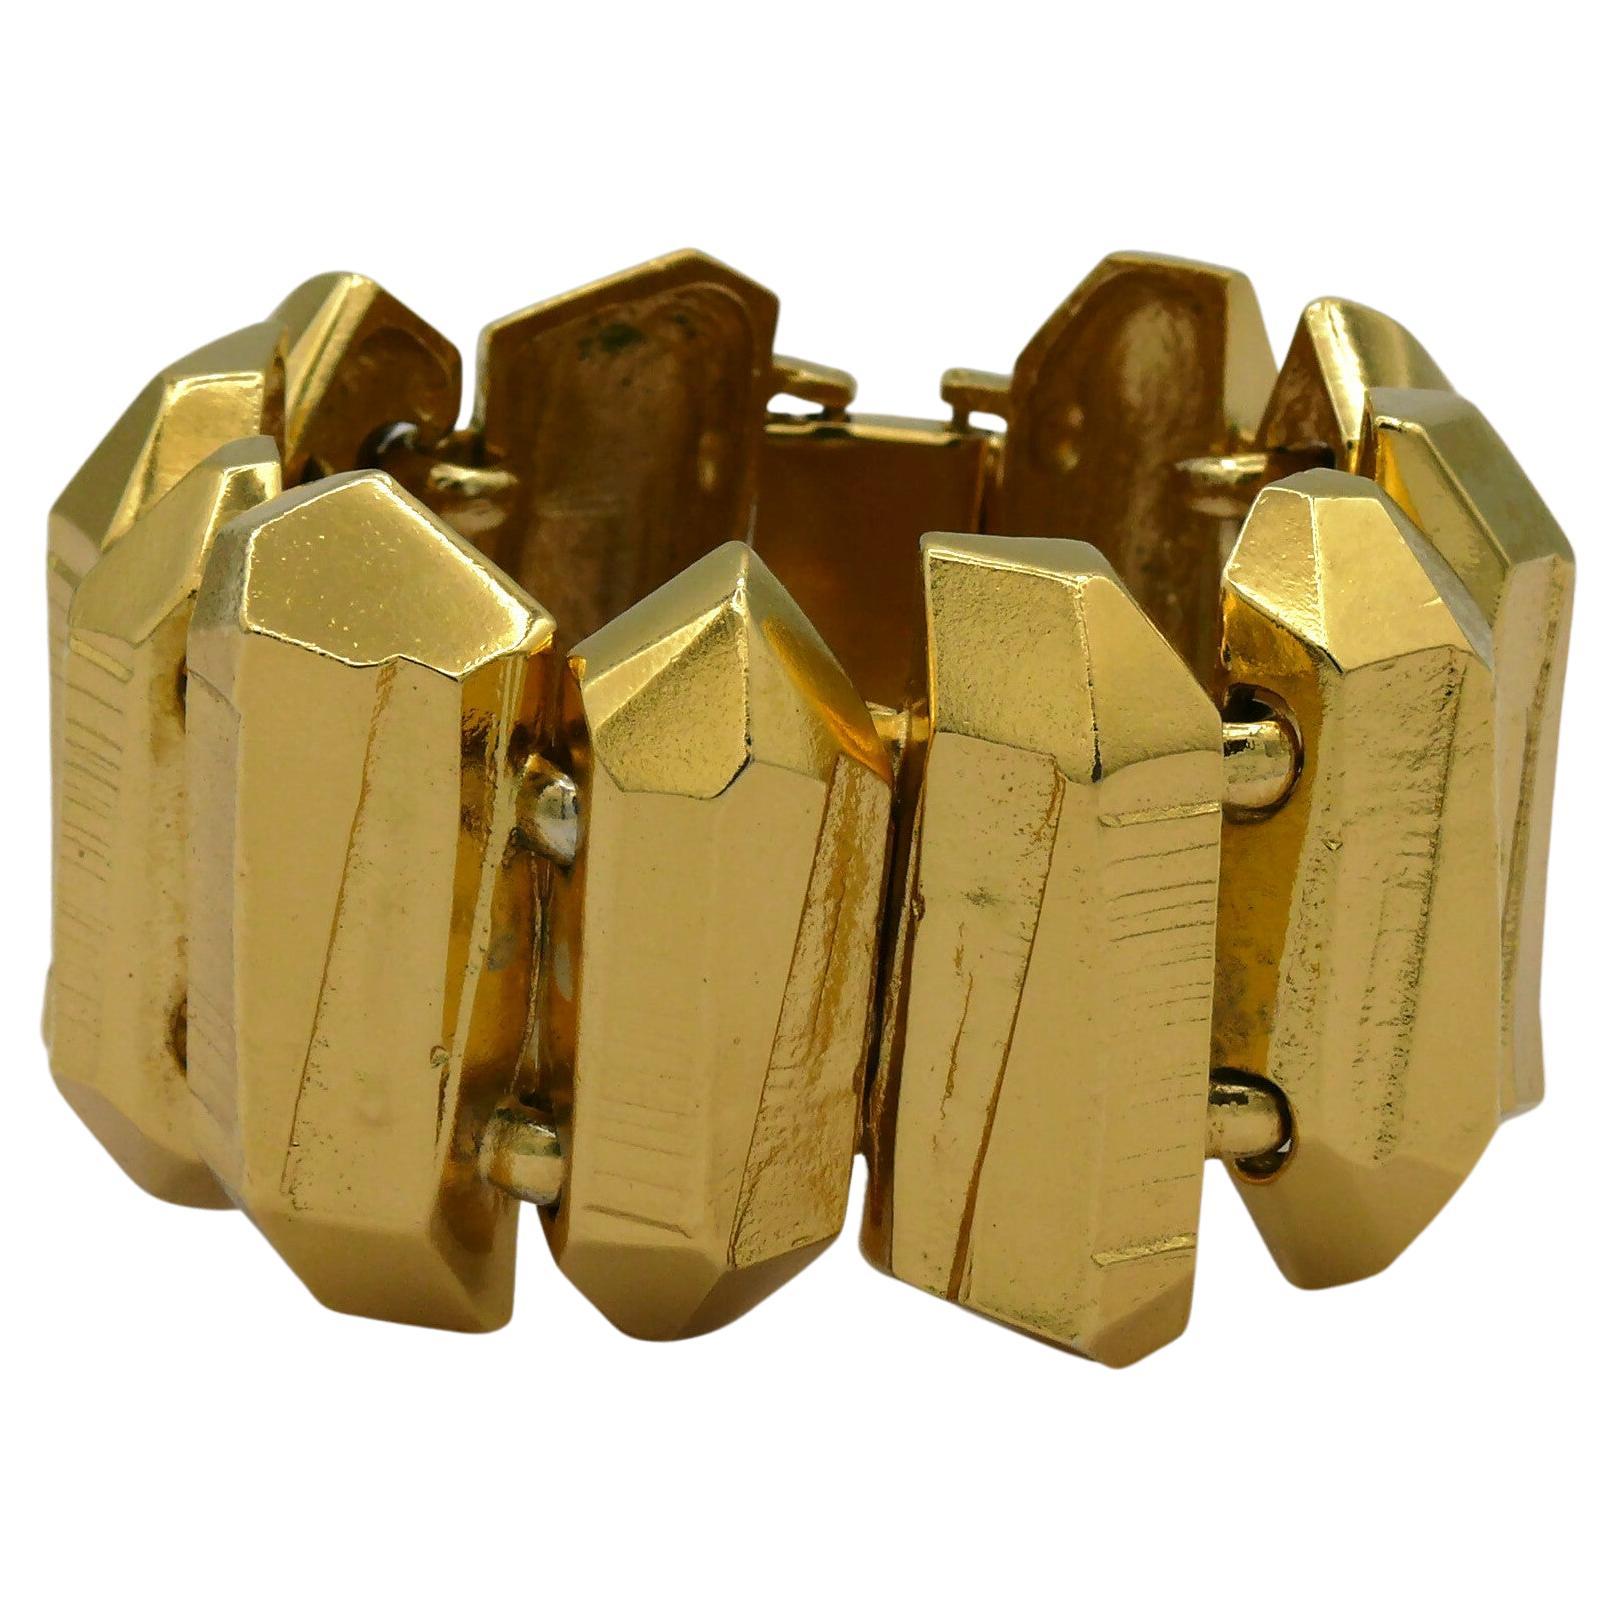 YVES SAINT LAURENT YSL Vintage Gold Tone Rock Crystal Prism Design Cuff Bracelet